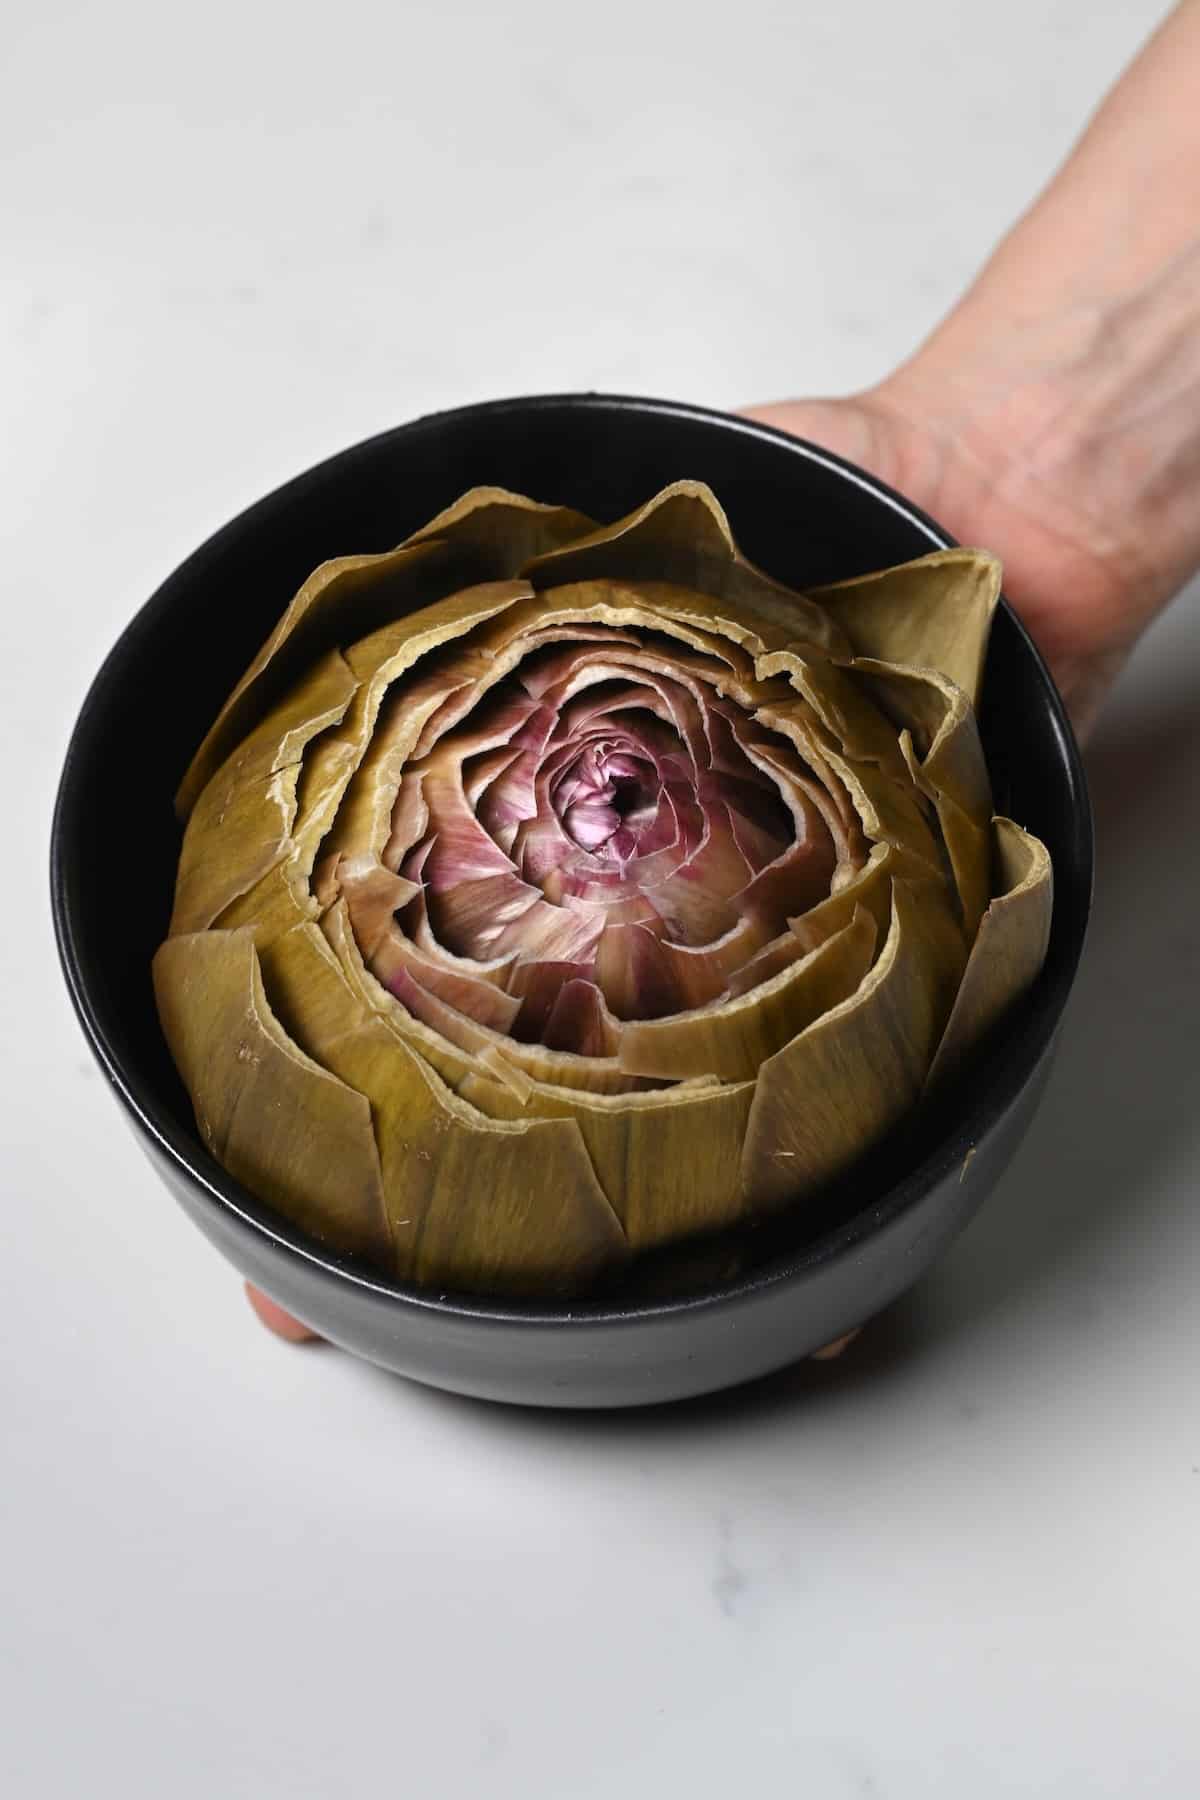 Steamed artichoke head in a bowl